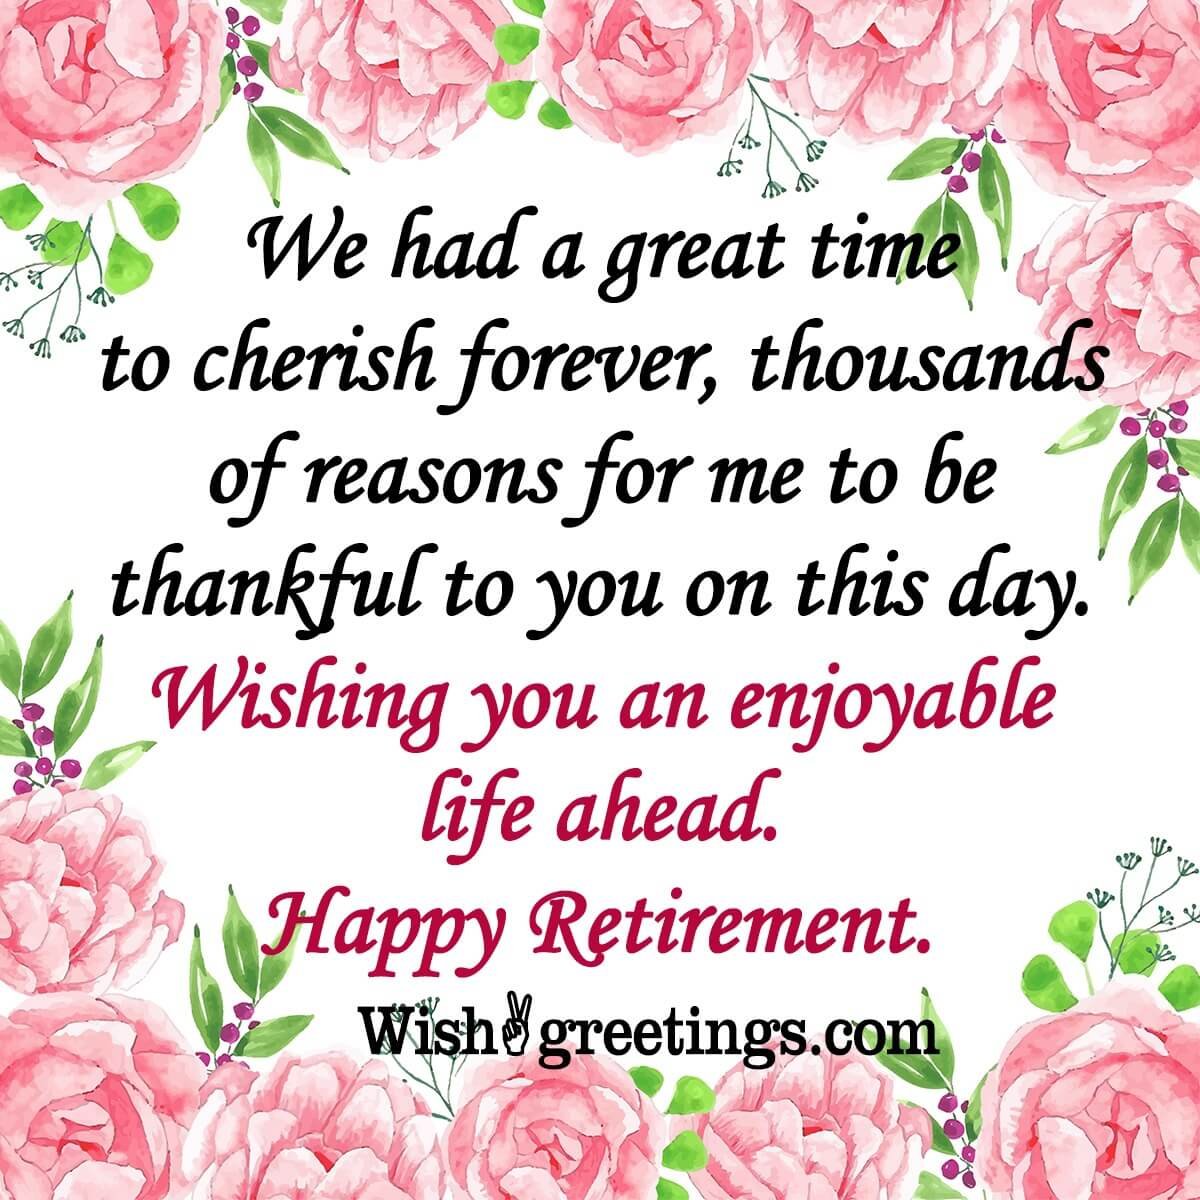 Wishing You An Enjoyable Happy Retirement!